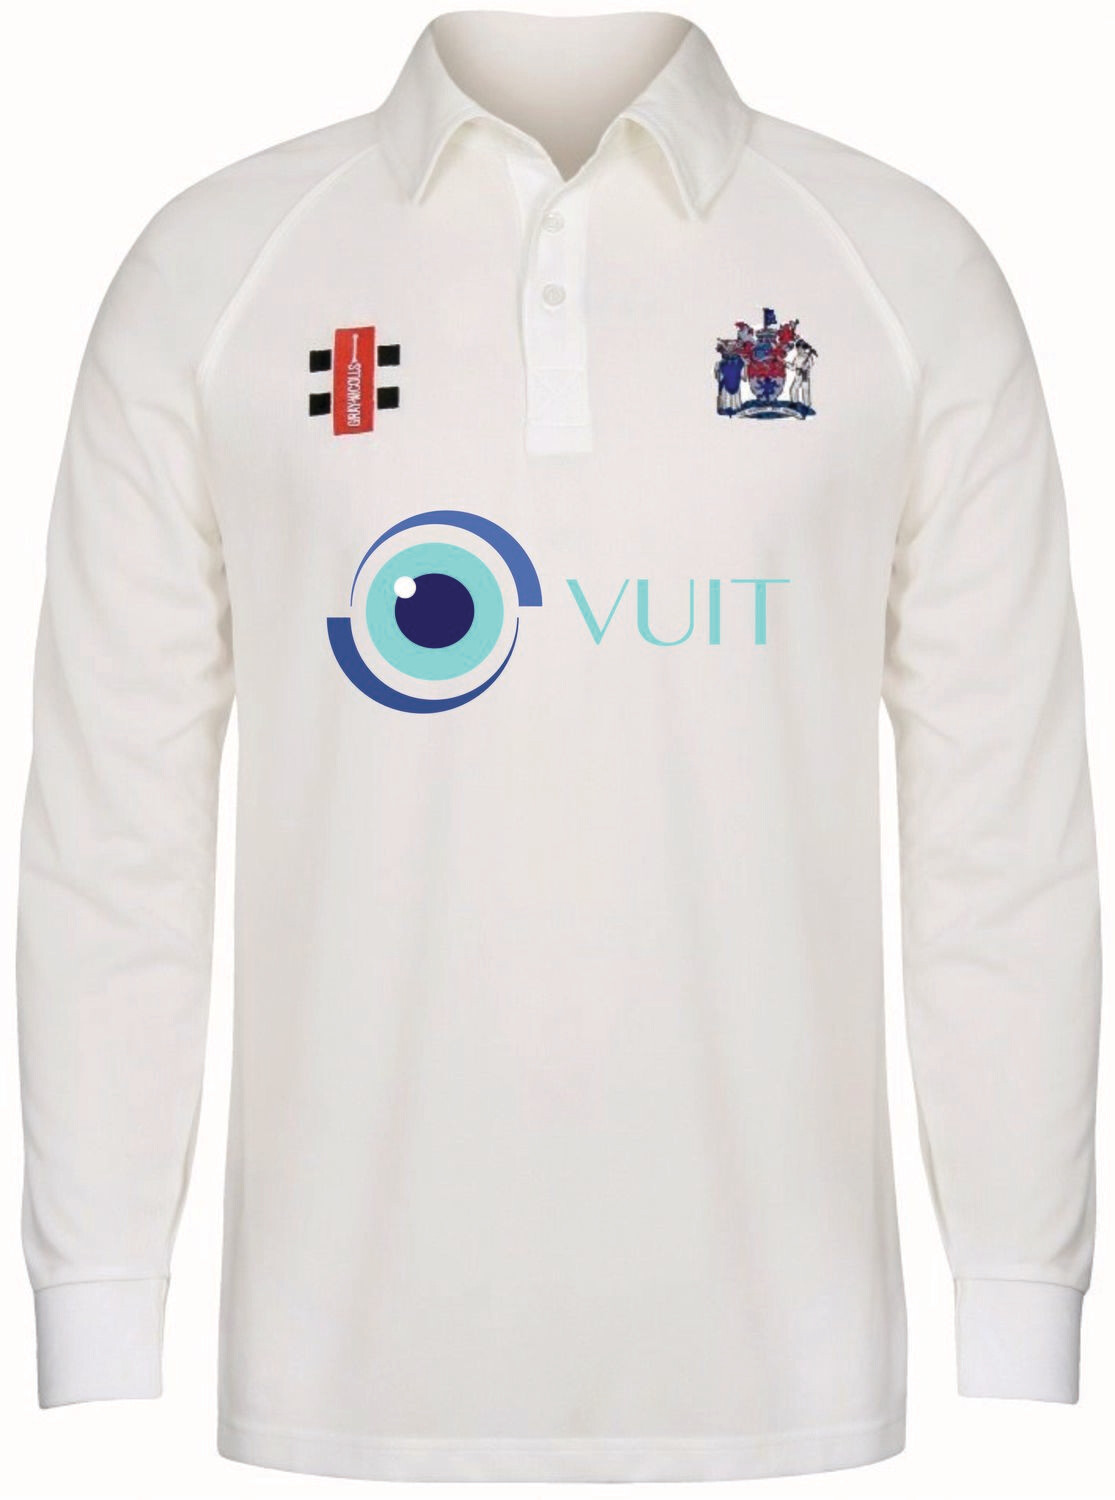 Peterlee Matrix Long Sleeve Cricket Shirt